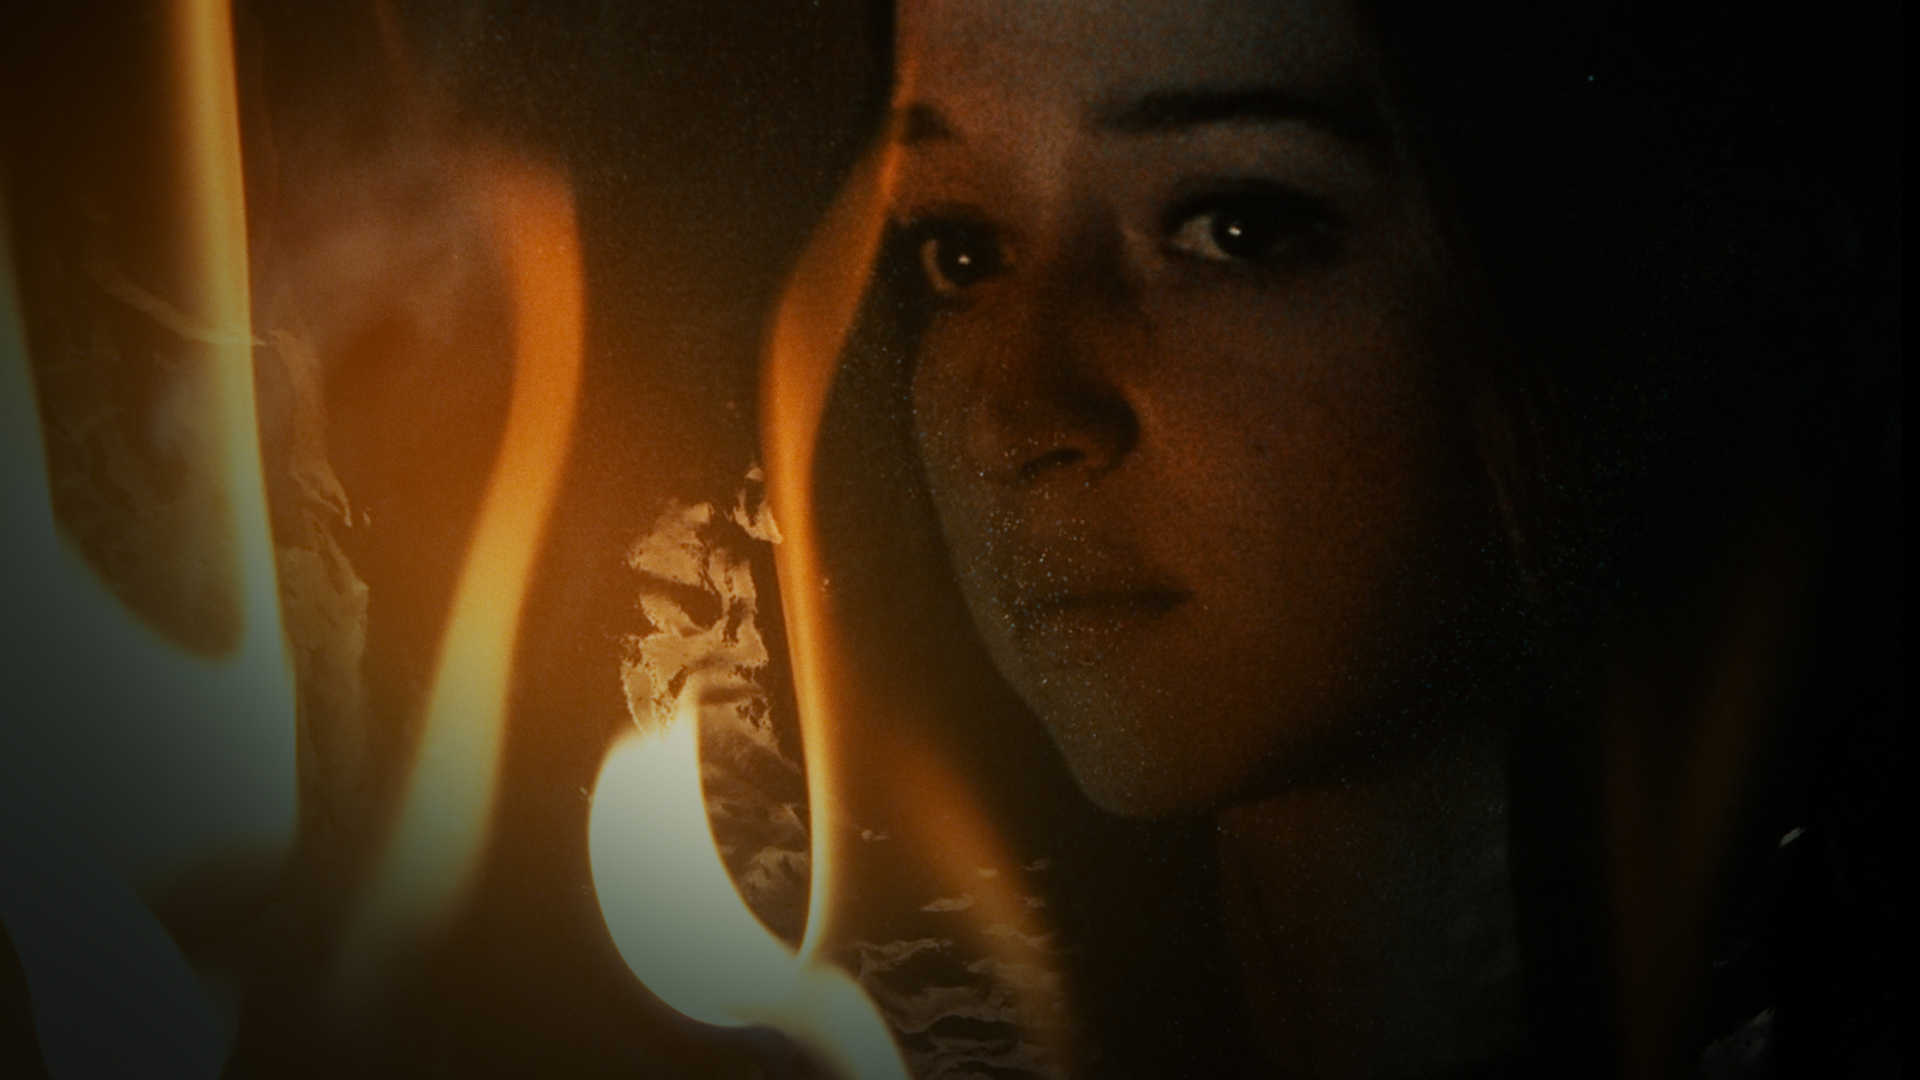 Eine junge Frau mit nachdenklichem Ausdruck im Gesicht in der Nahaufnahme. Links im Bild züngeln vereinzelte Flammen.